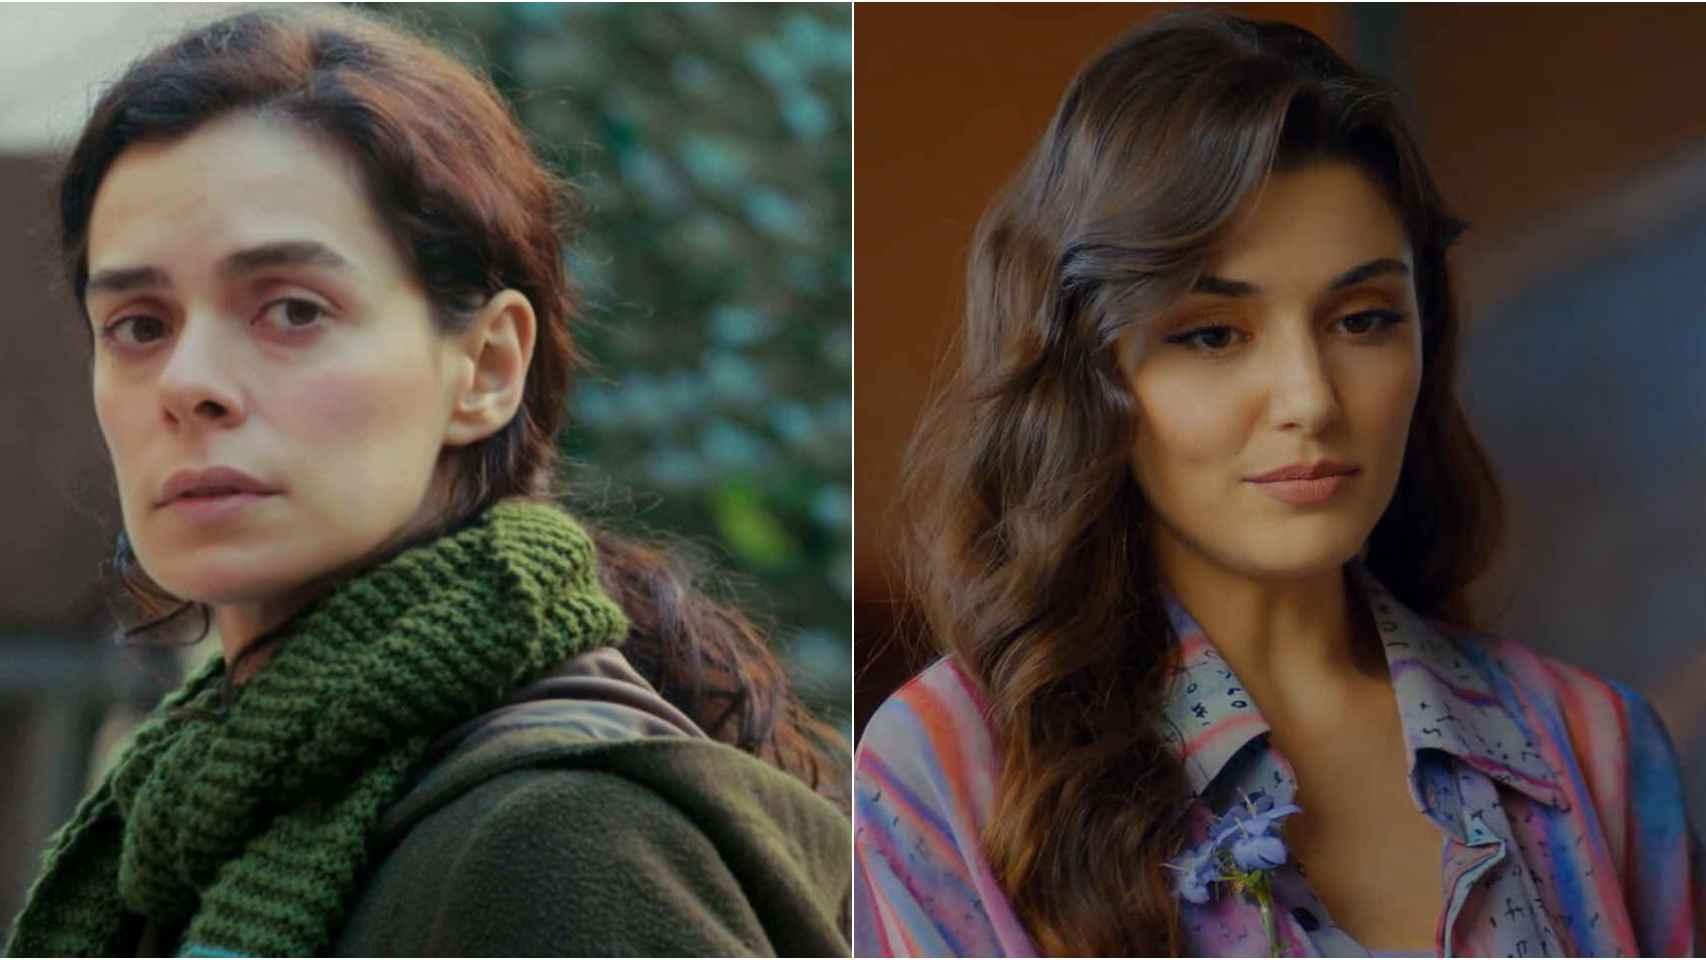 Bahar ('Mujer') y Eda ('Love is in the air') son dos de las protagonistas turcas más reconocidas.